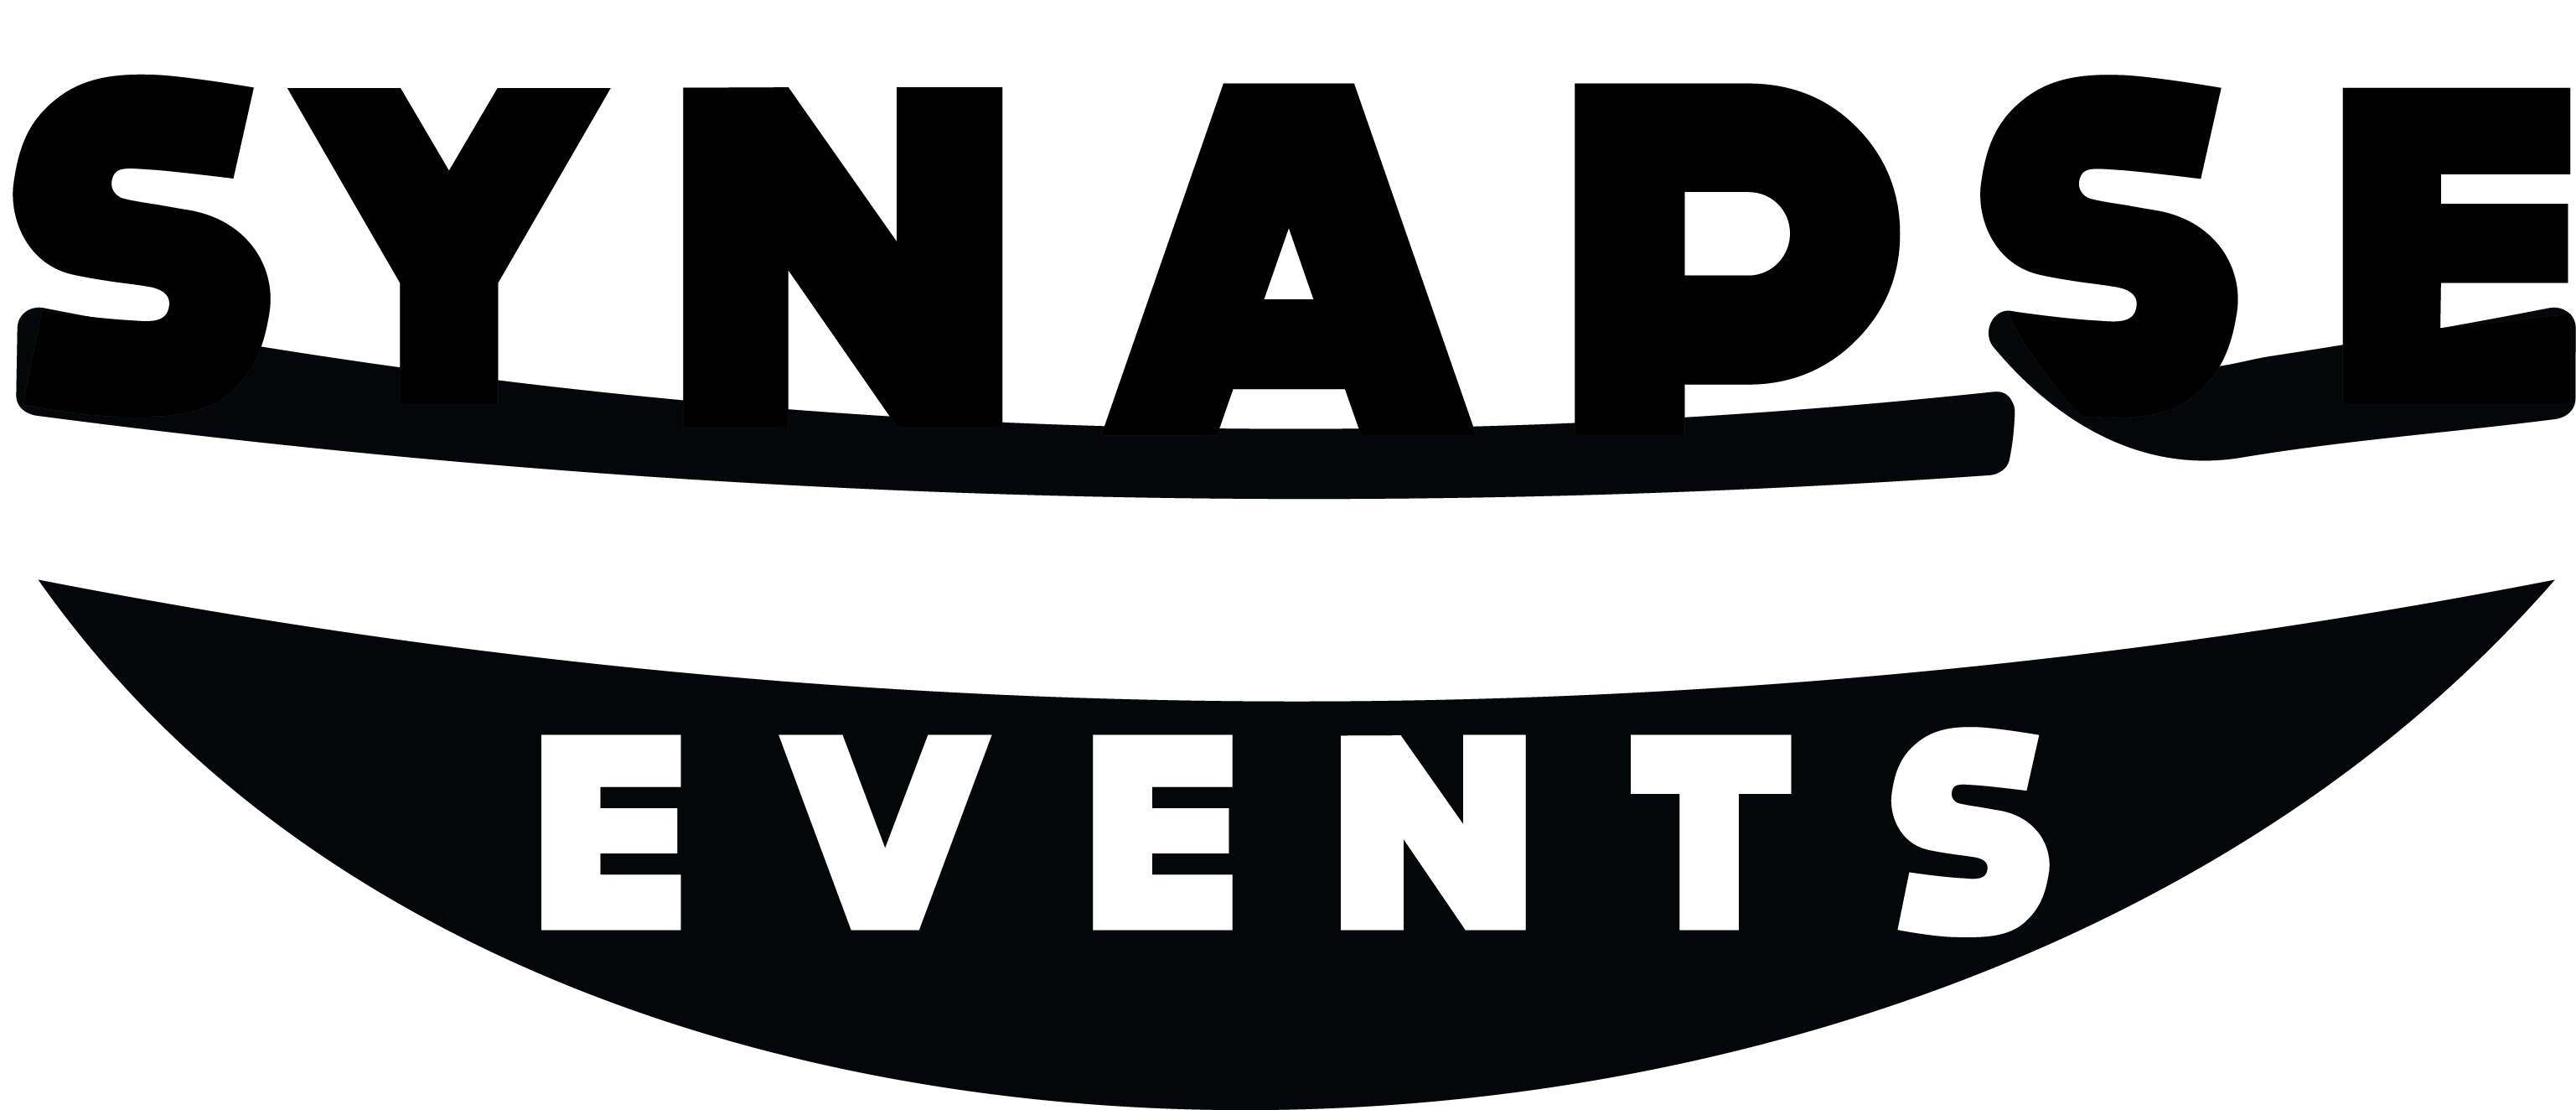 Synpase events logo1